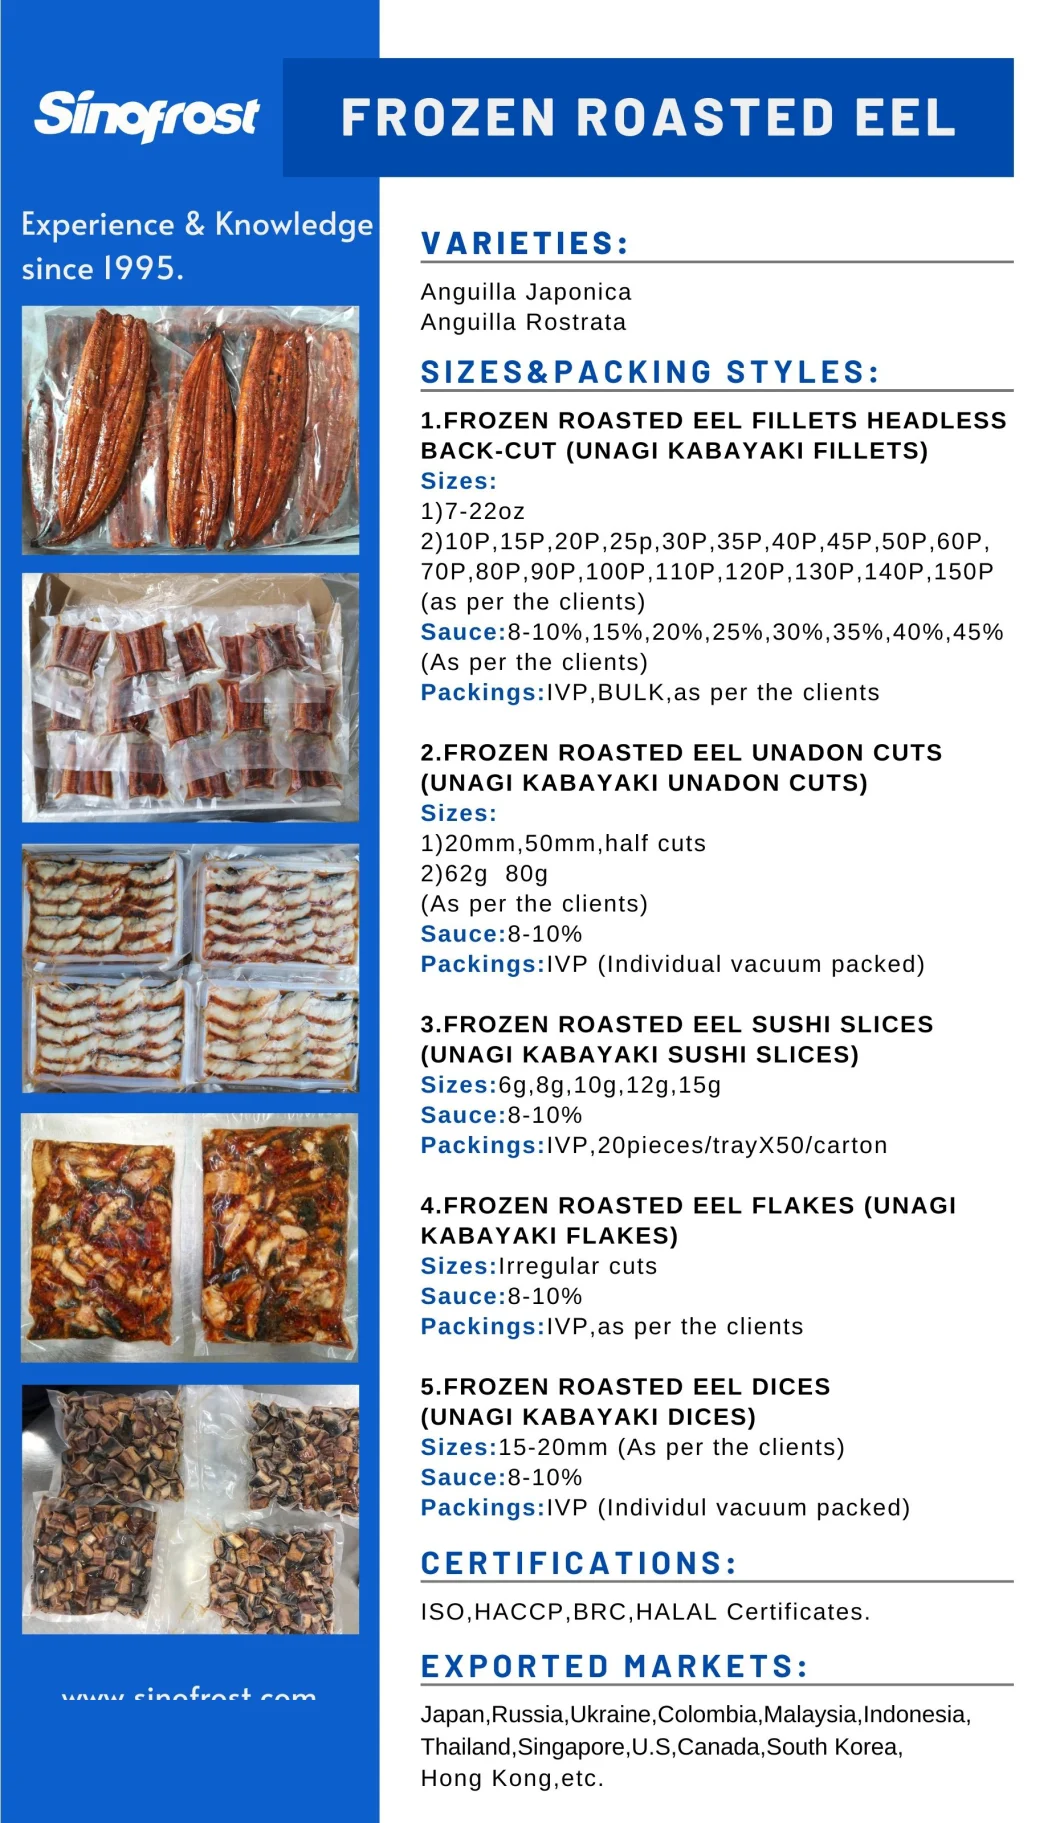 Frozen BBQ Eel,Frozen Grilled Eel,Frozen Roasted Eel,Frozen Prepared Eel,Frozen Farmed Eel,Unagi Kabayaki,Frozen Broiled Eel,No Msg,ISO/HACCP/Halal Certified